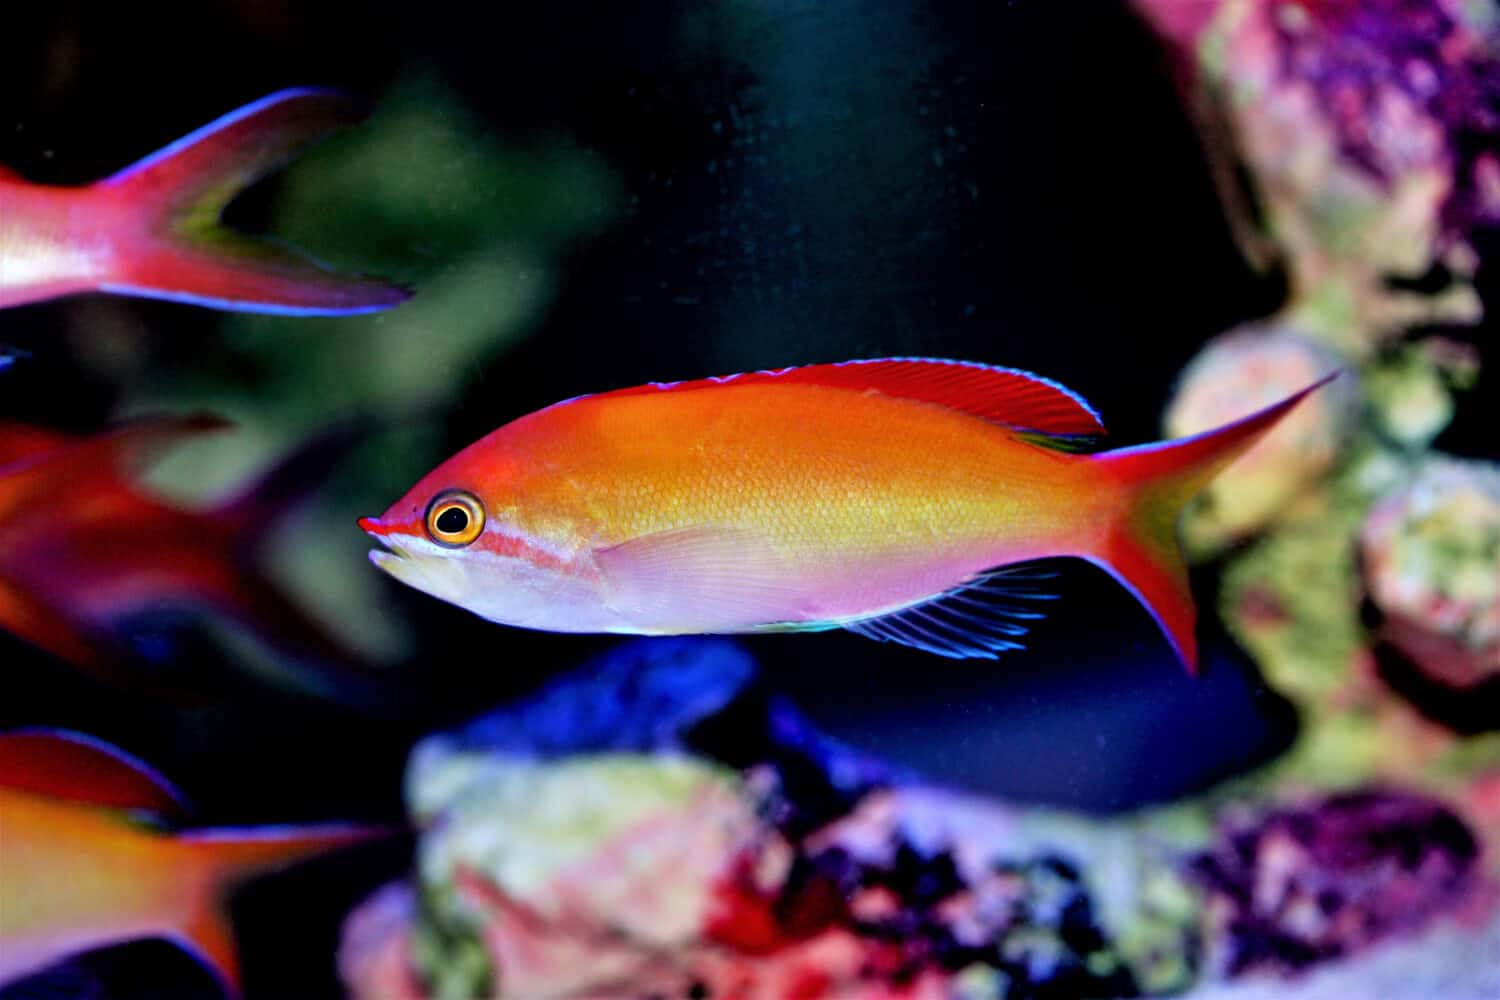 The beautiful Flame Anthias (Pseudanthias ignitus) in marine aquarium. It is a colorful anthias that is a rare find in the aquarium trade.